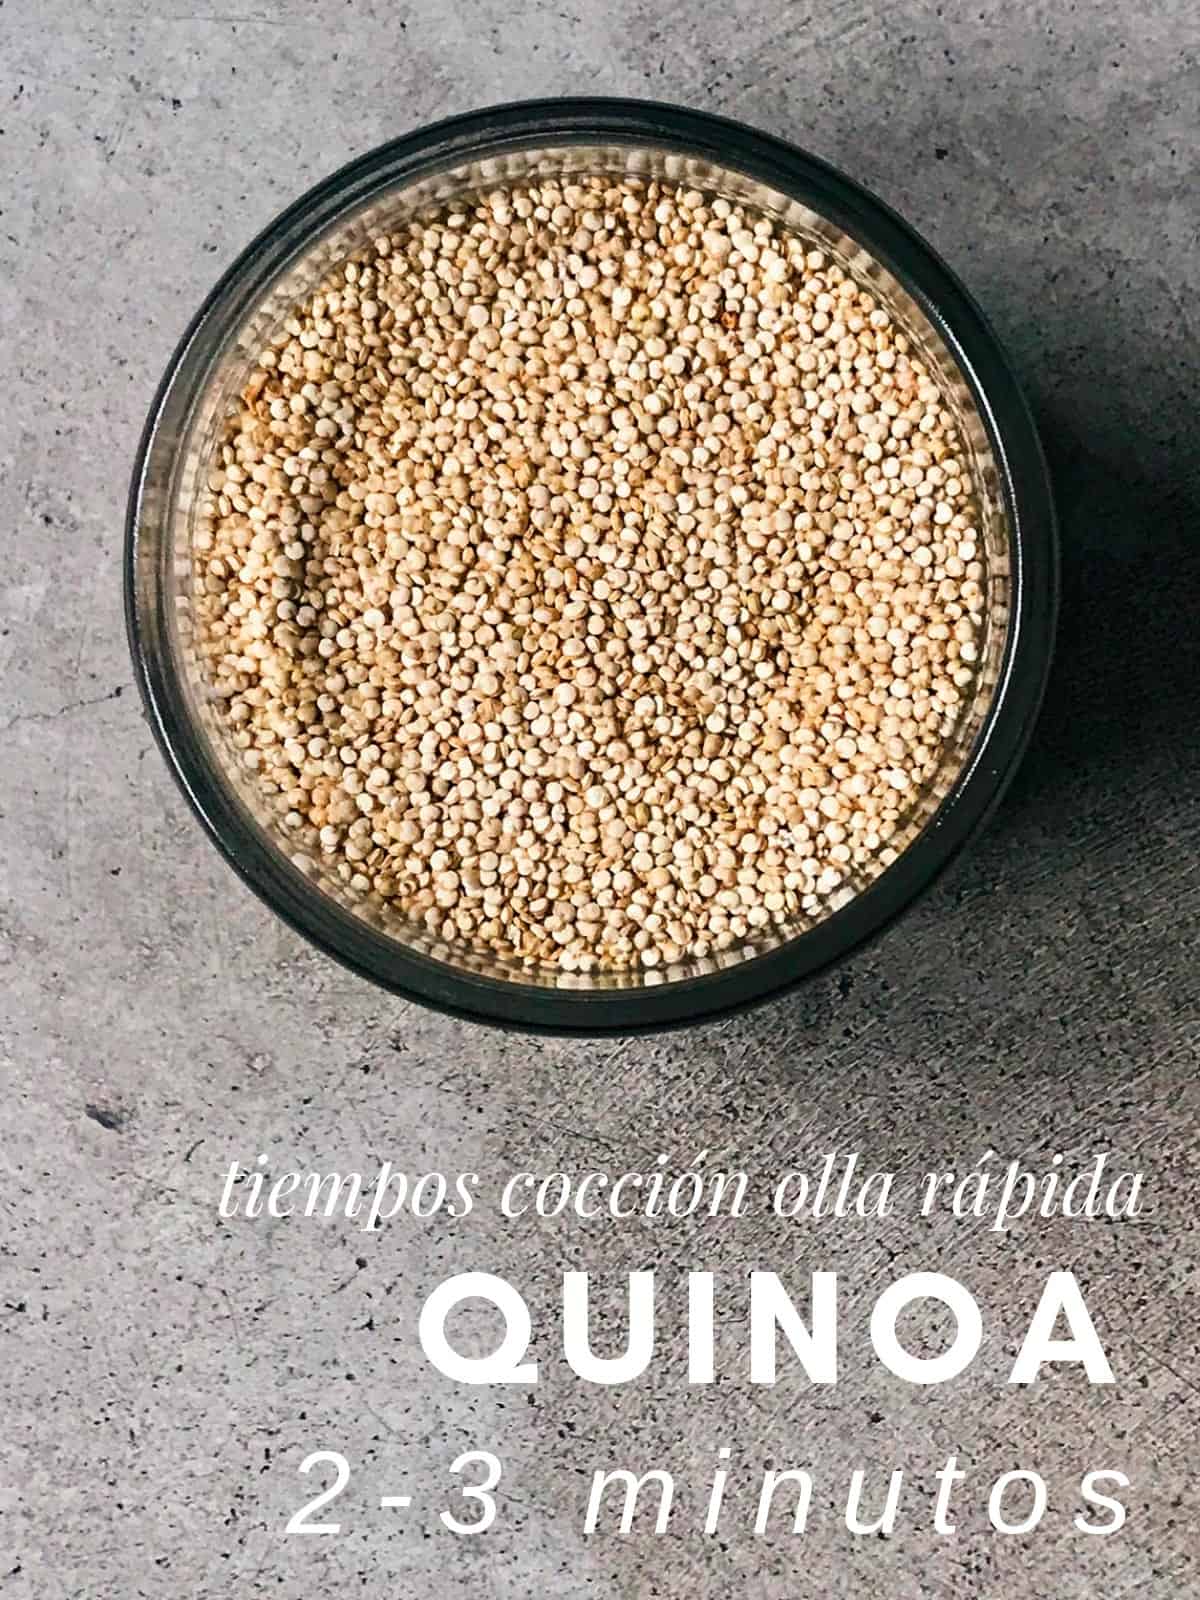 Tiempo de cocción de quinoa en olla rápida